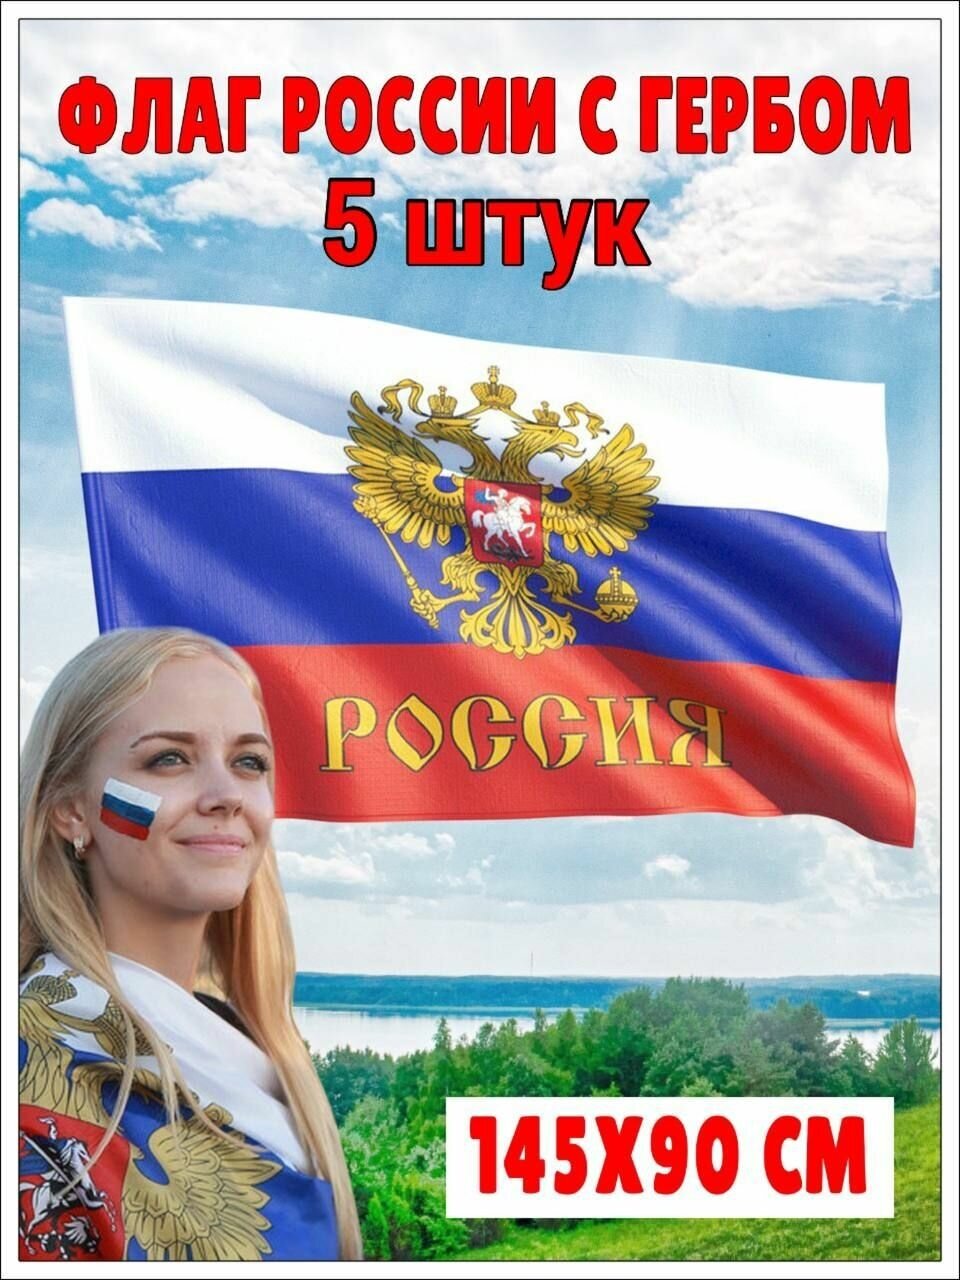 Флаг России большой 145 см на 90 см триколор с гербом и орлом набор 5 шт. Российский флаг на День Победы 9 мая.